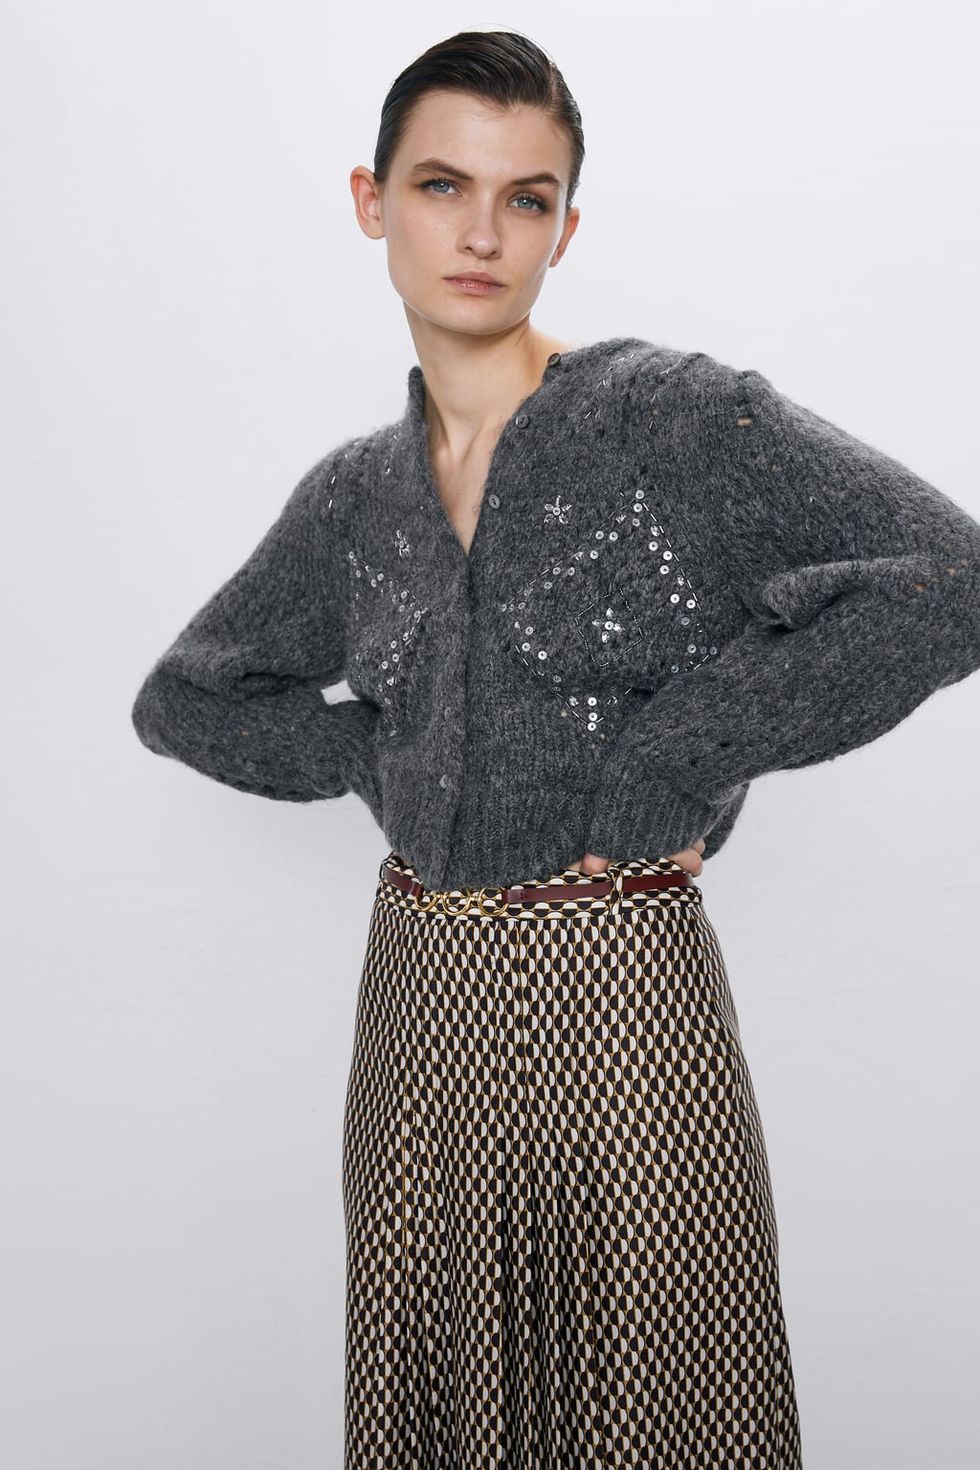 En Zara diseñado una chaqueta de punto que joya